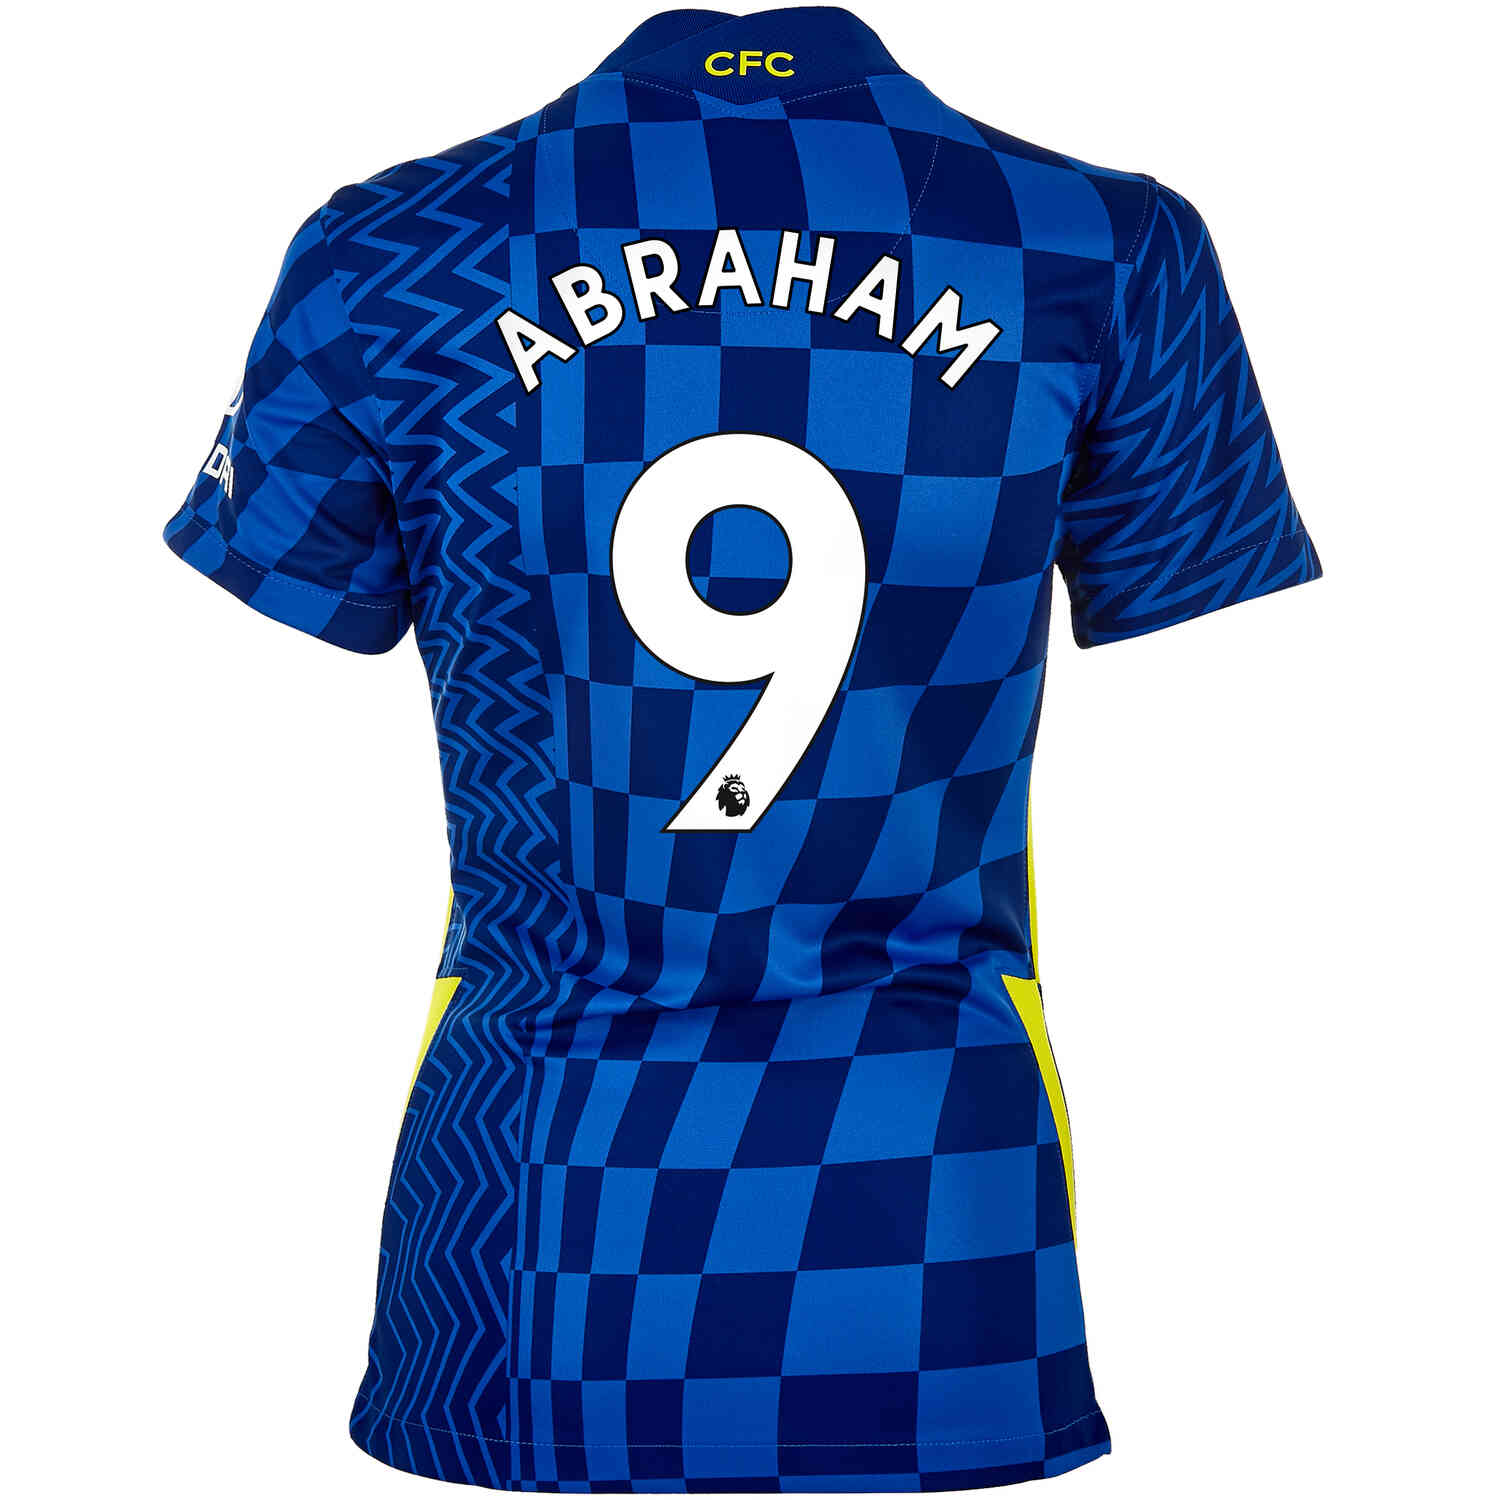 2020/21 Womens Nike Tammy Abraham Chelsea Away Jersey - SoccerPro